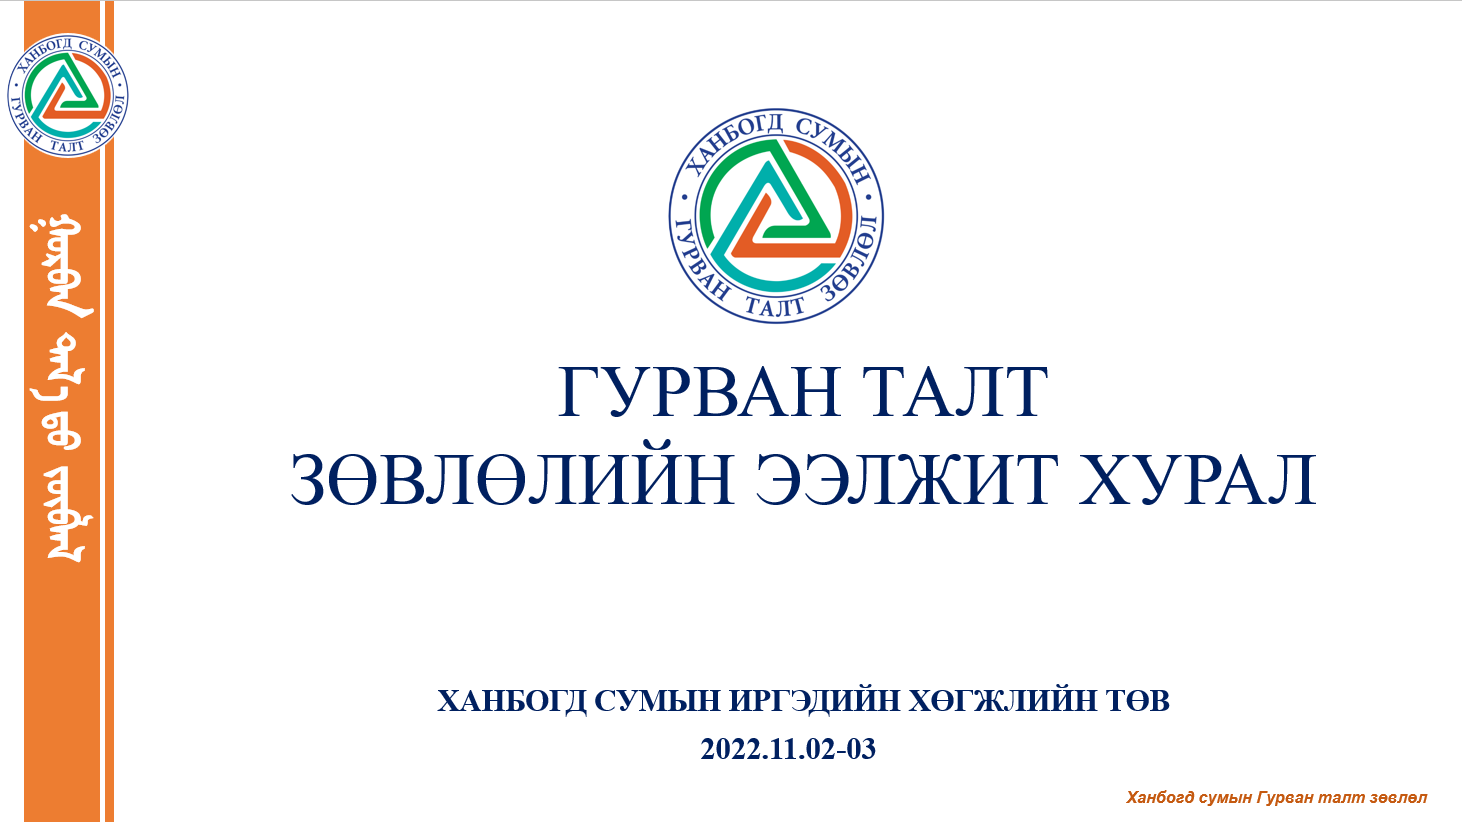 Ханбогд сумын Гурван талт зөвлөлийн хурал 2022 оны 11 сарын 02, 03-ны өдөр зохион байгуулагдана.